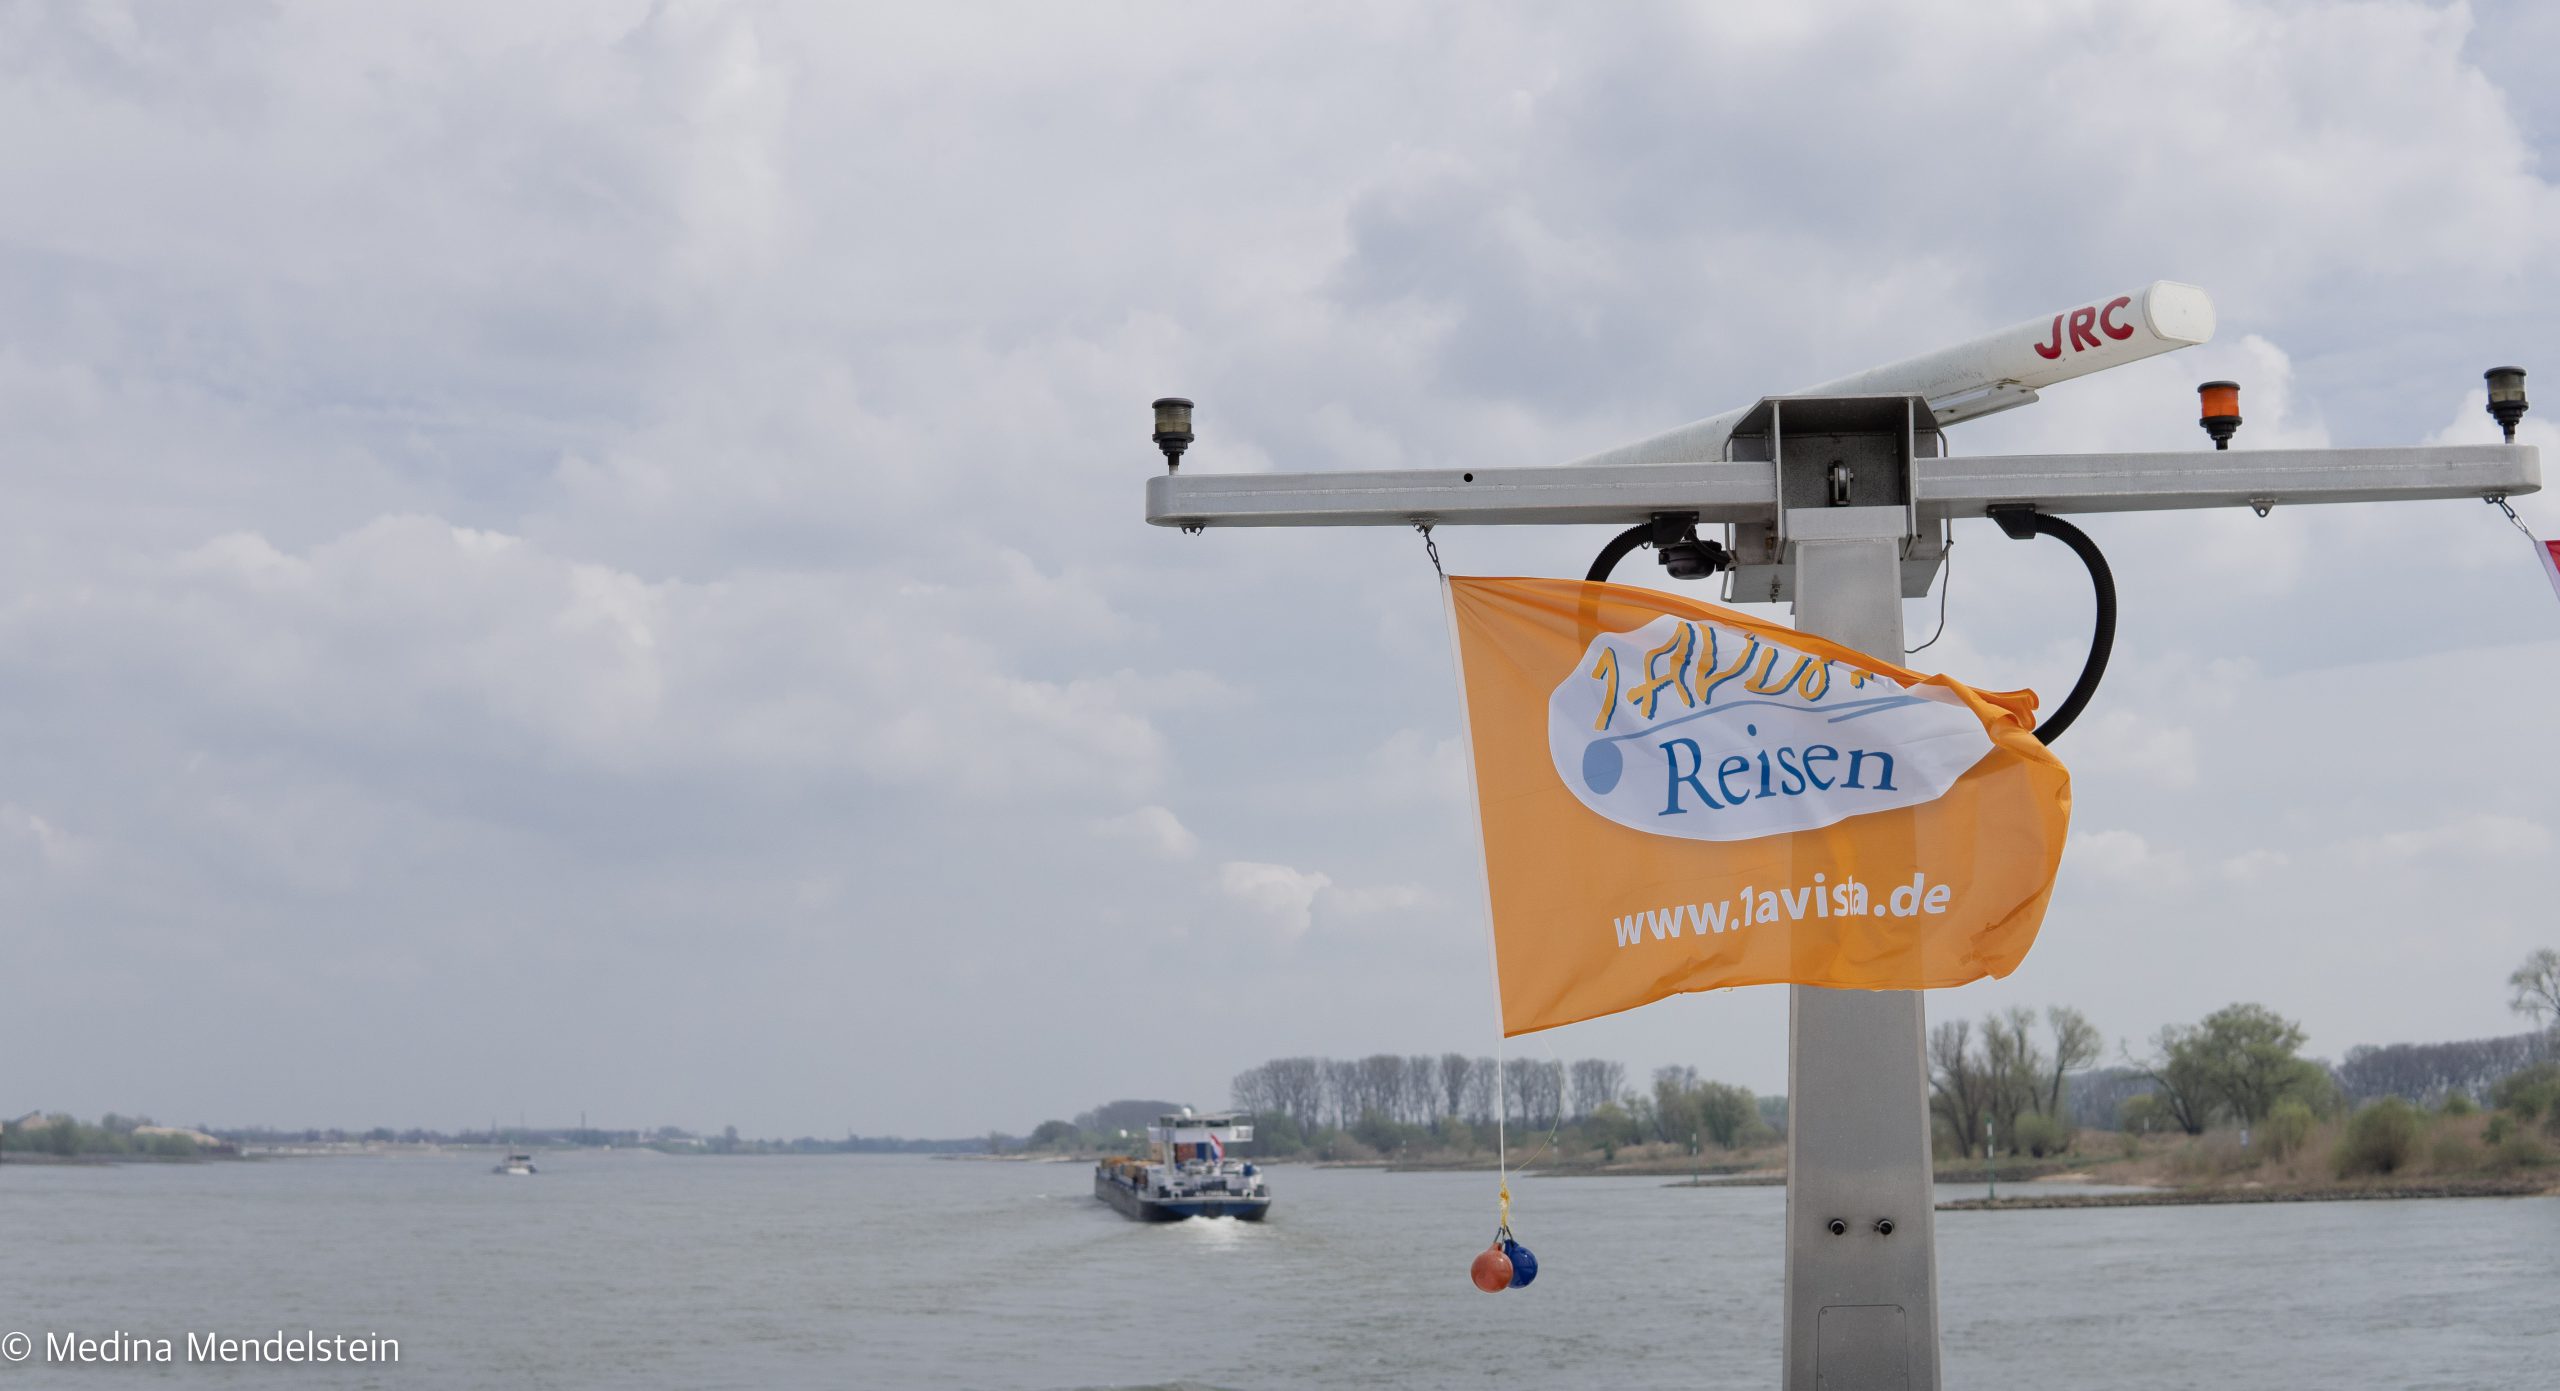 Flagge der Vista Rio von 1A Vista Reisen. Im Hintergrund der Rhein und ein Container Schiff.